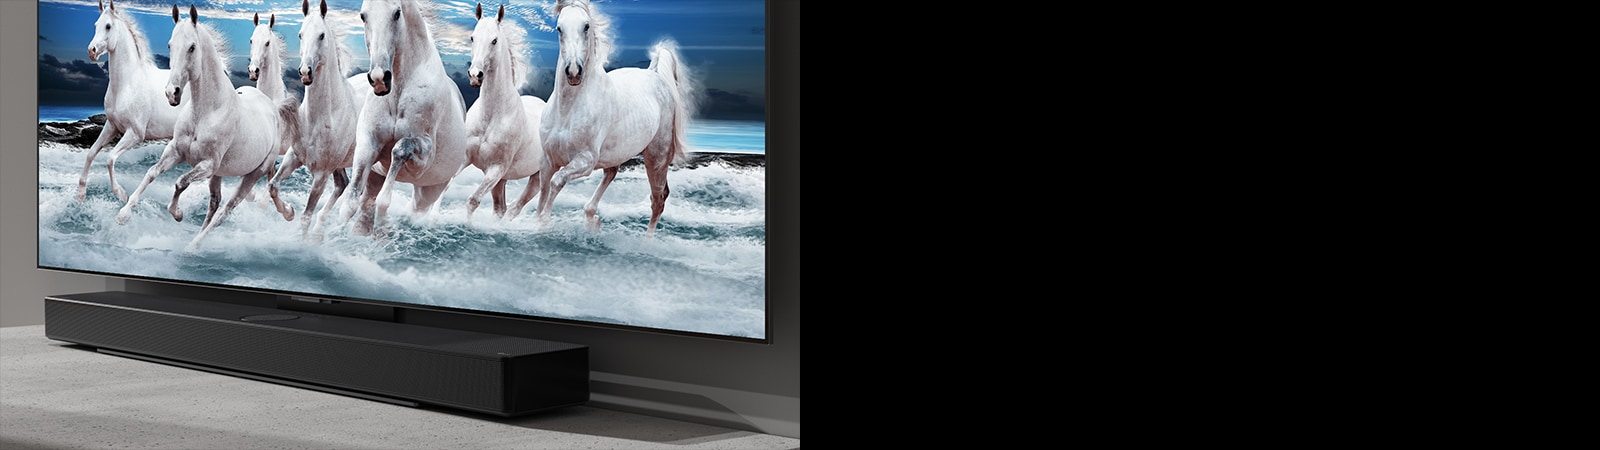 Hangprojektor és TV a fehér asztalon, a TV-ben 7 fehér ló látható.